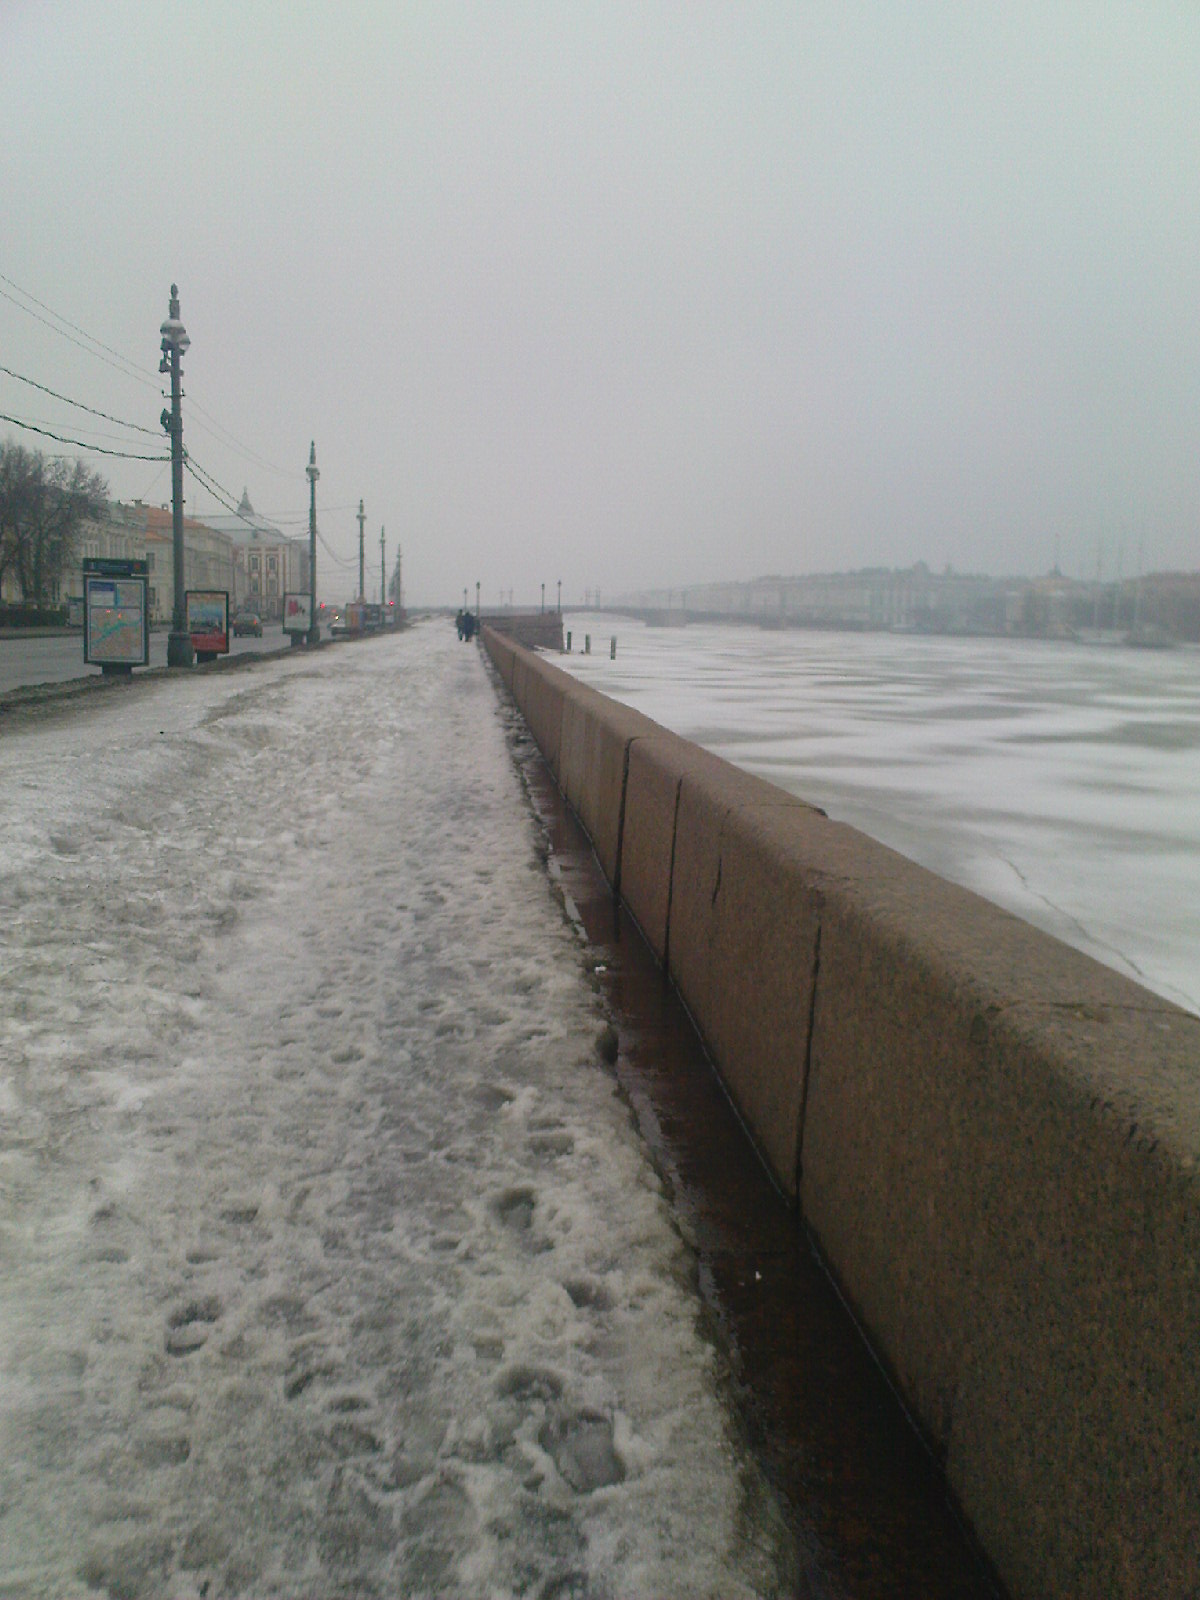 Петербург. Вид туманный Зимний Дворец и Адмиралтейство со стороны Университетской набережной. Весна 2010